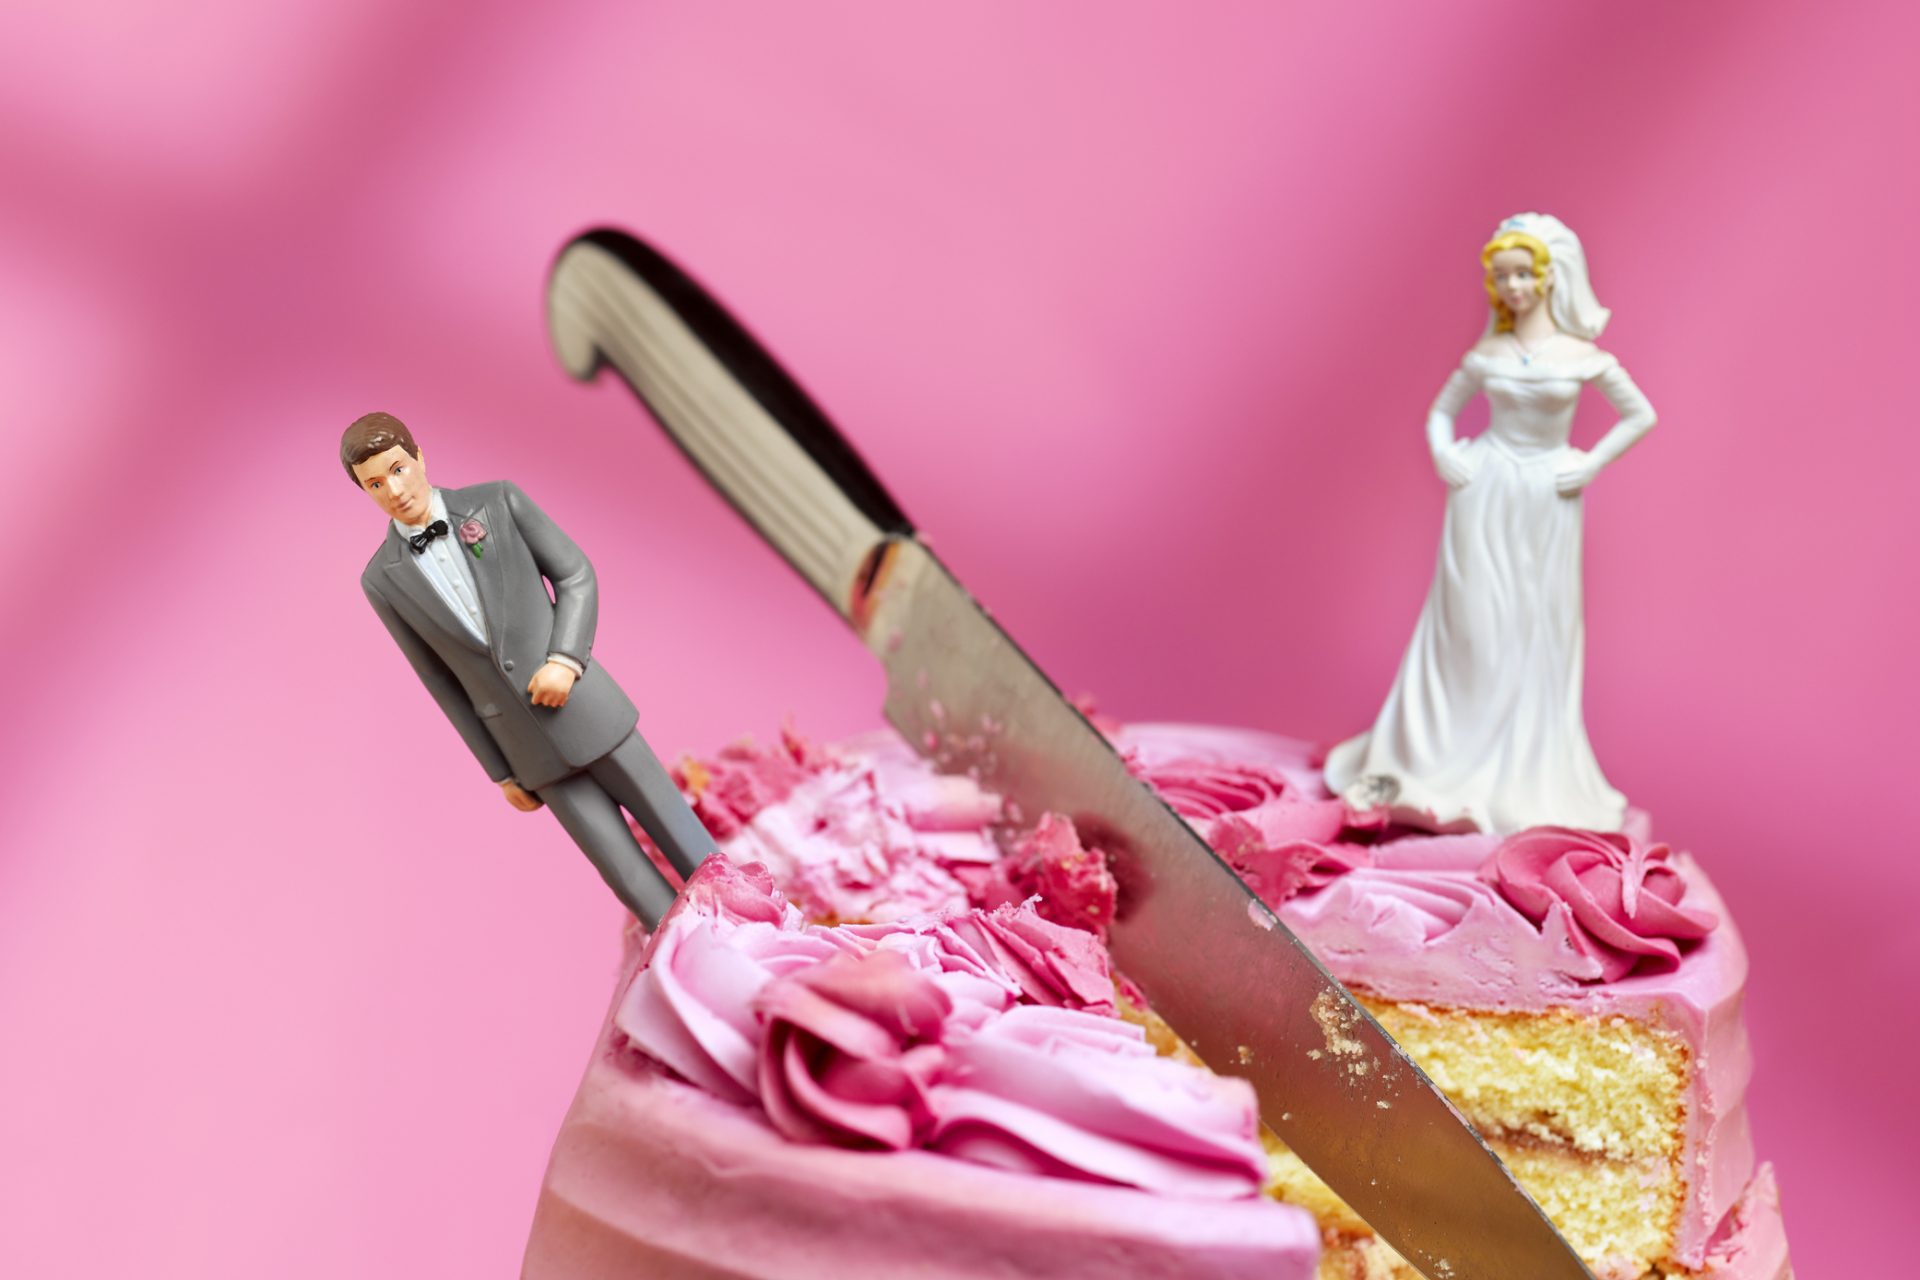 Relações antes do casamento levam a maior risco de divórcio, diz estudo